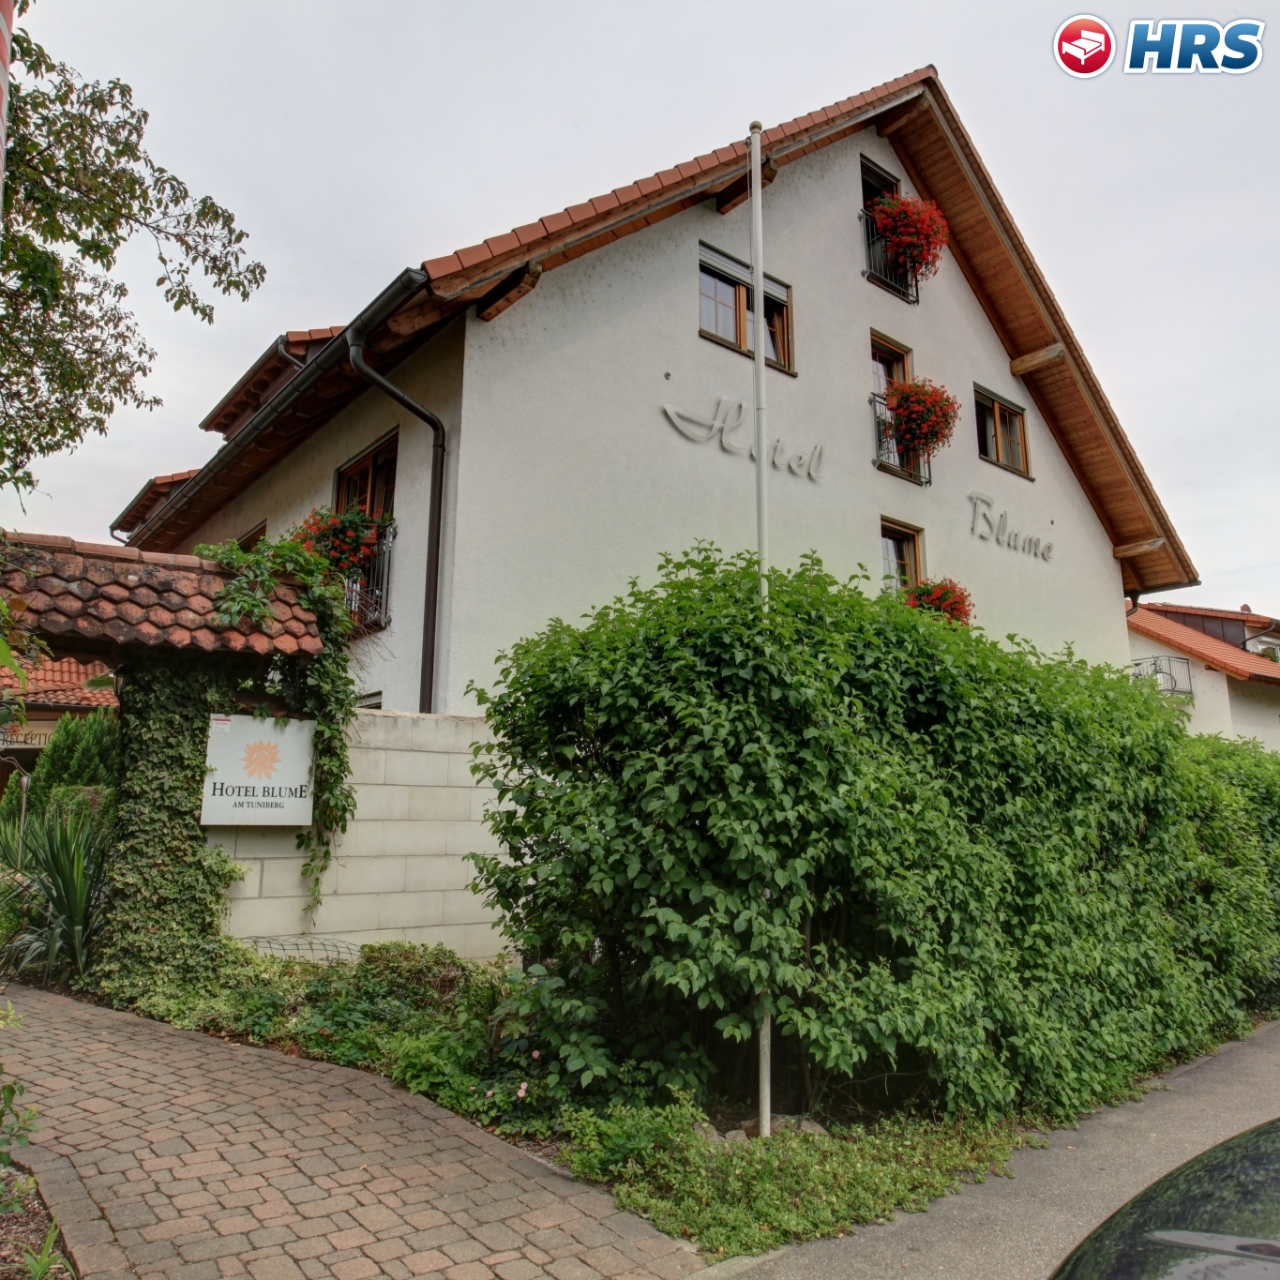 Hotel Blume in Freiburg im Breisgau bei HRS günstig buchen